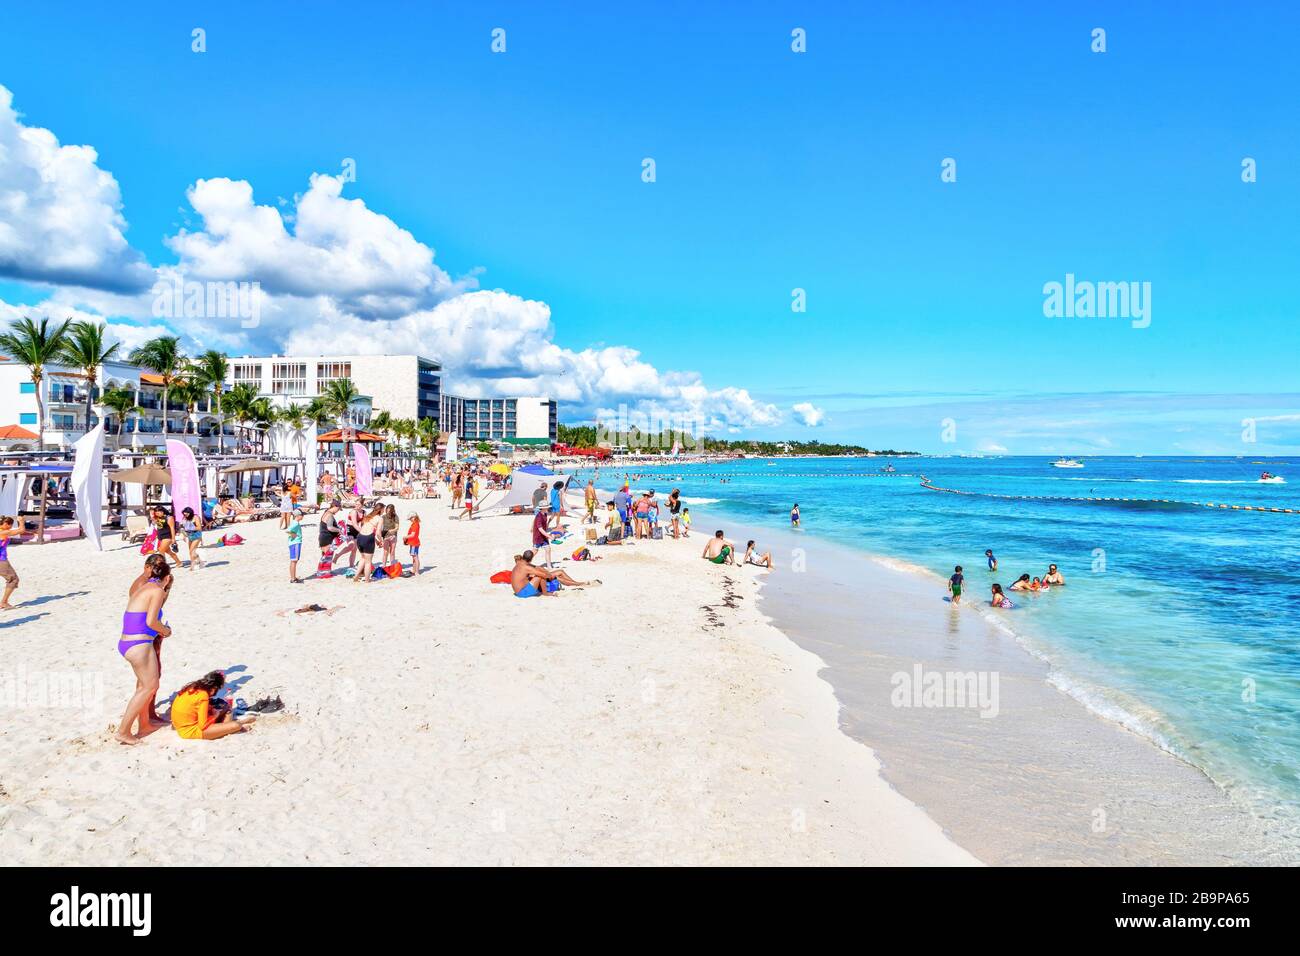 Playa del Carmen, Mexiko - 26. Dezember 2019: Überfüllter Strand voller Menschen, die an der Playa del Carmen in der Riviera Maya in der Karibik spielen und sich sonnen Stockfoto